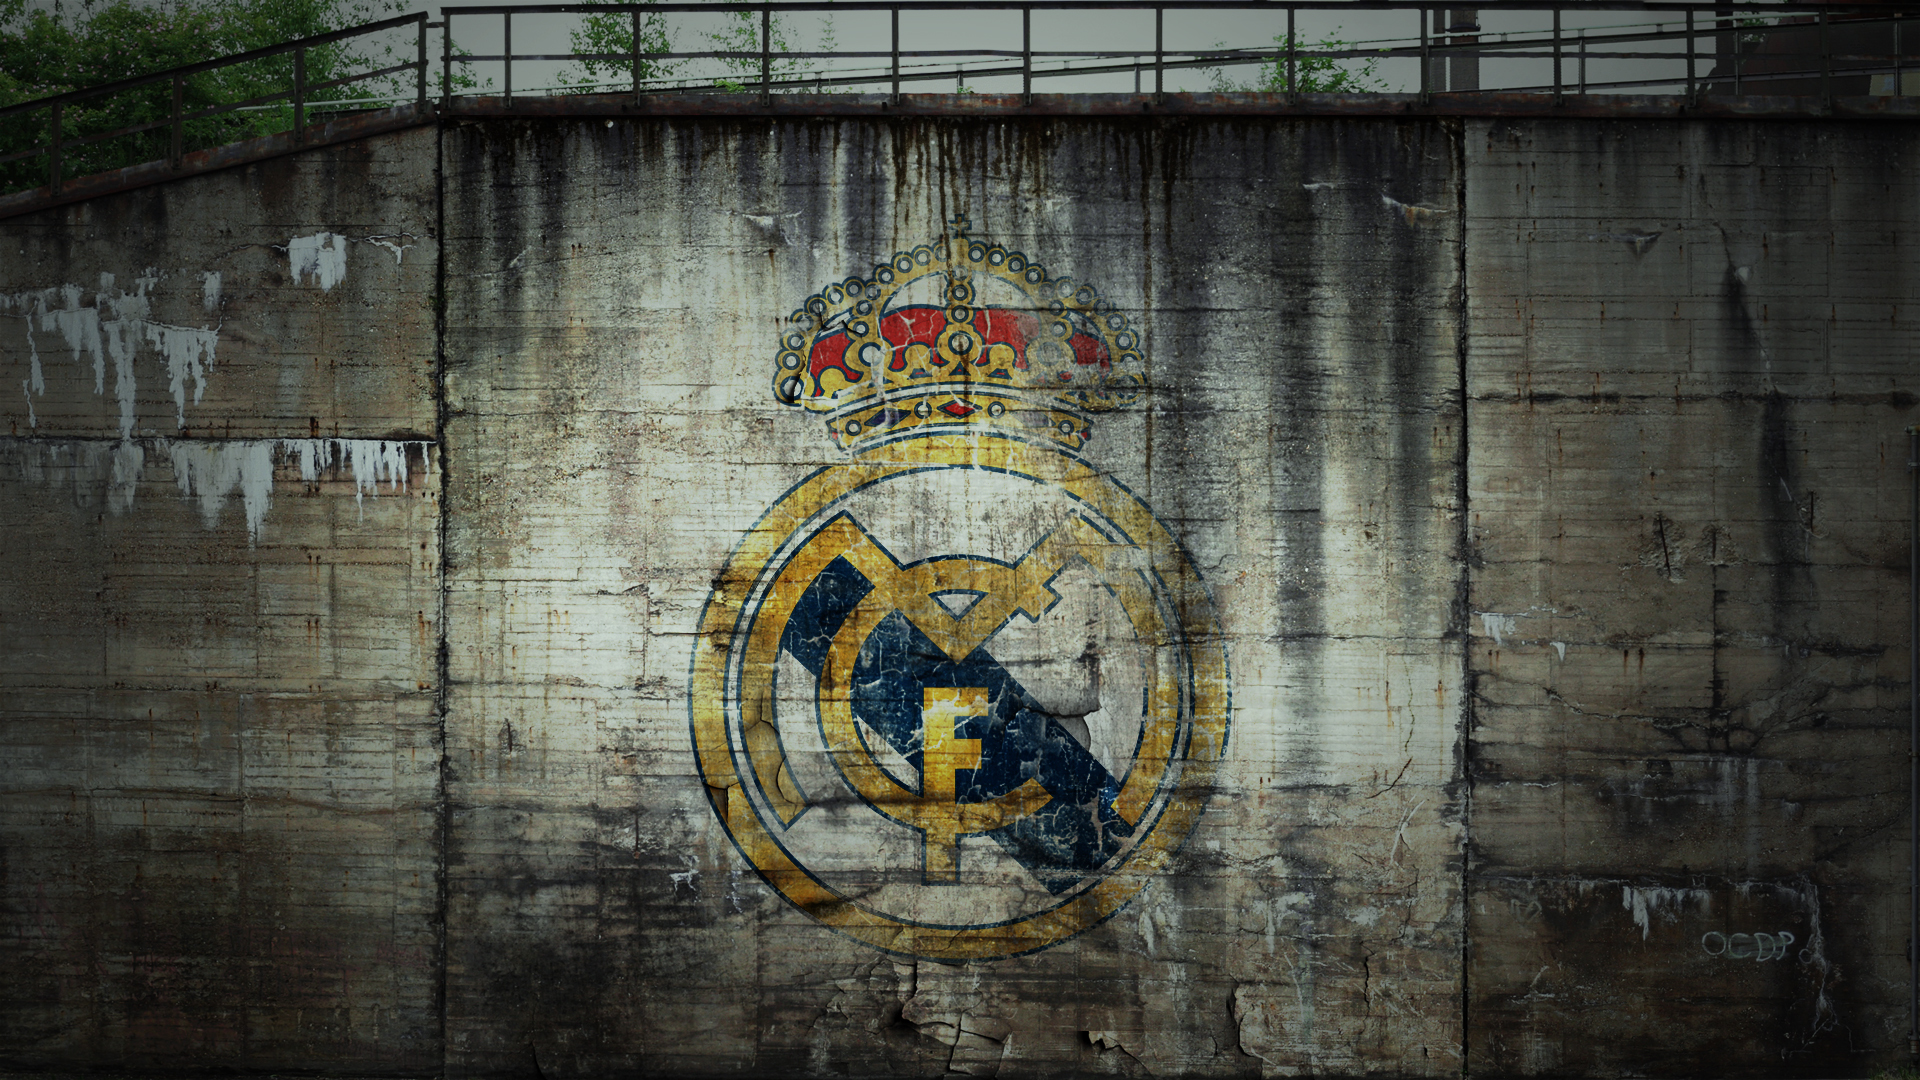 Descarga gratuita de fondo de pantalla para móvil de Fútbol, Logo, Emblema, Deporte, Real Madrid C F.